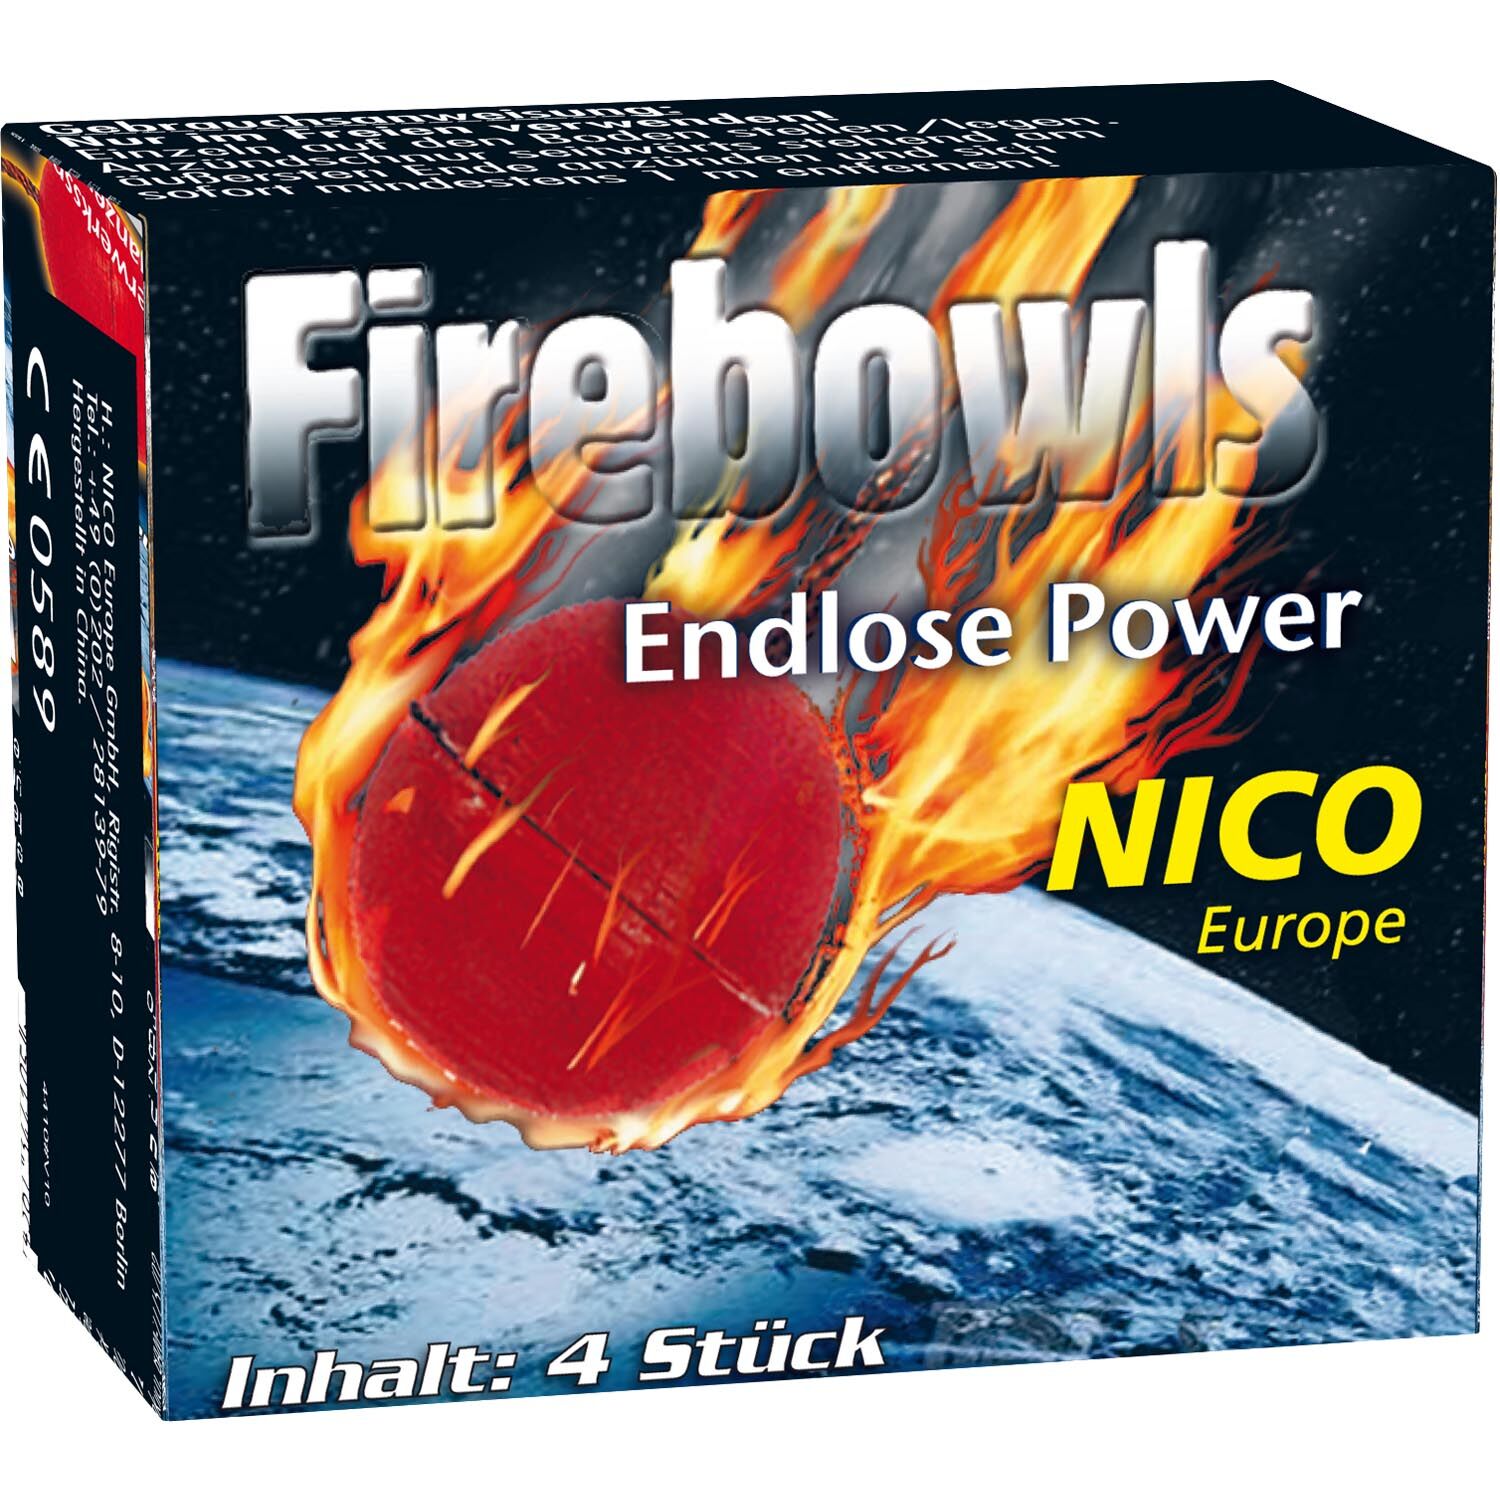 NEU Feuerwerk / Kinder- & Jugendfeuerwerk, Firebowls, Packung mit 4 Stck